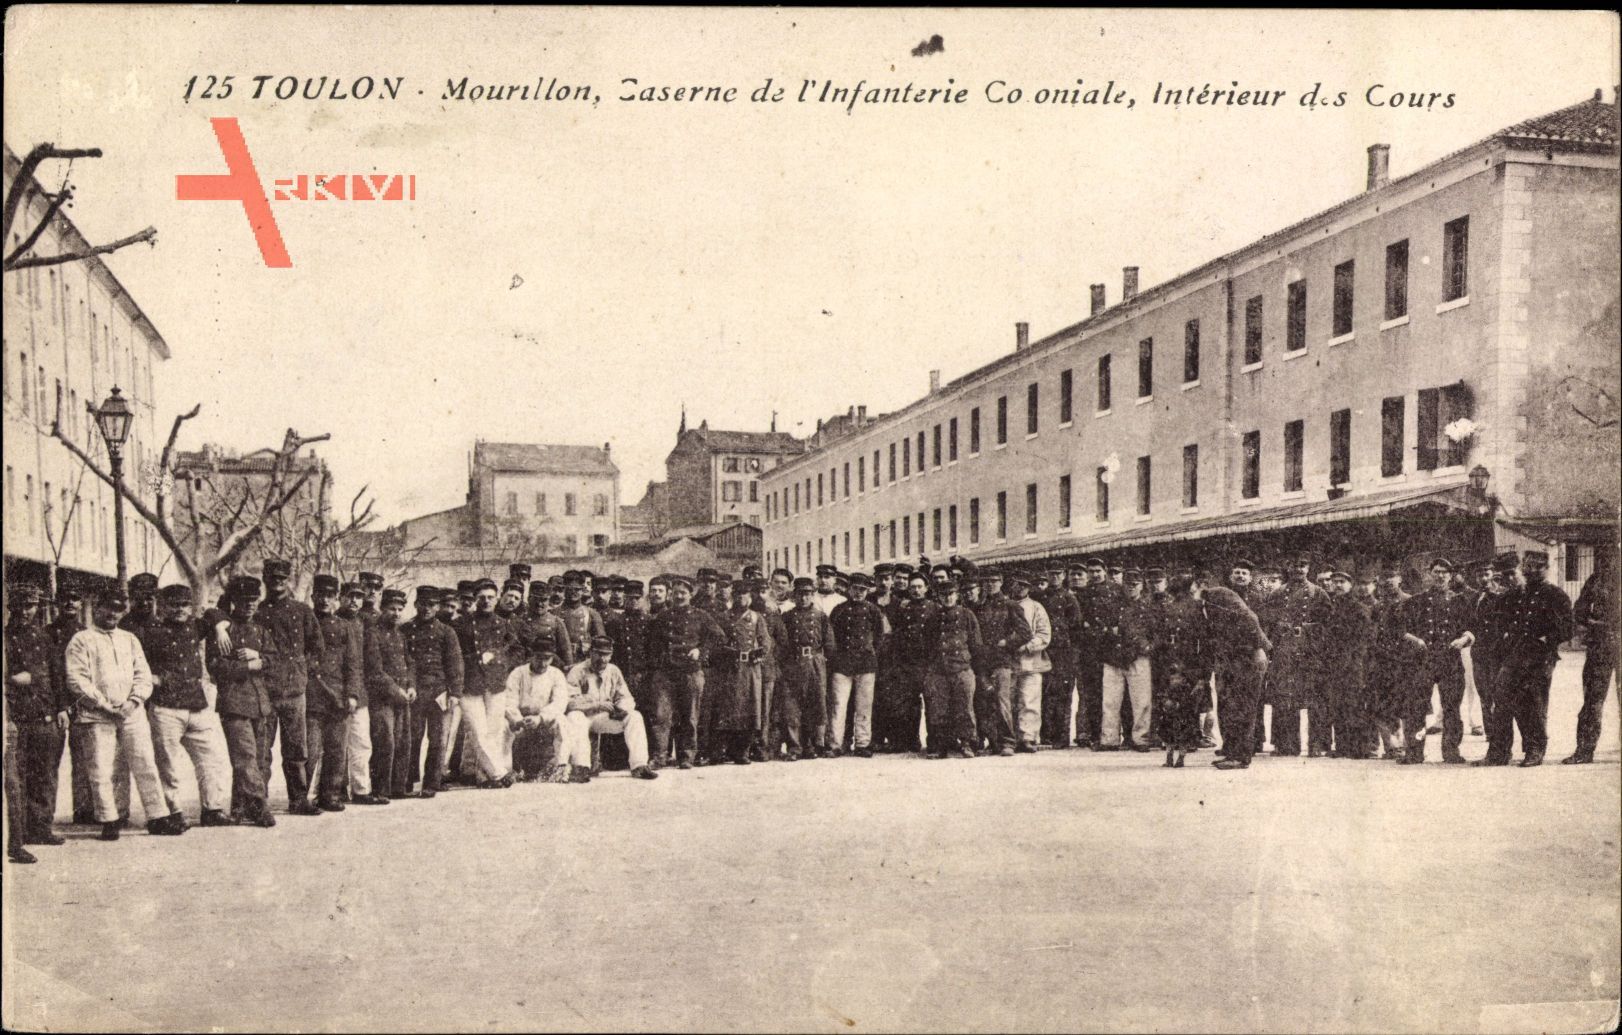 Toulon Var, Mourillon, Caserne de lInfanterie Coloniale, Intérieur des Cours